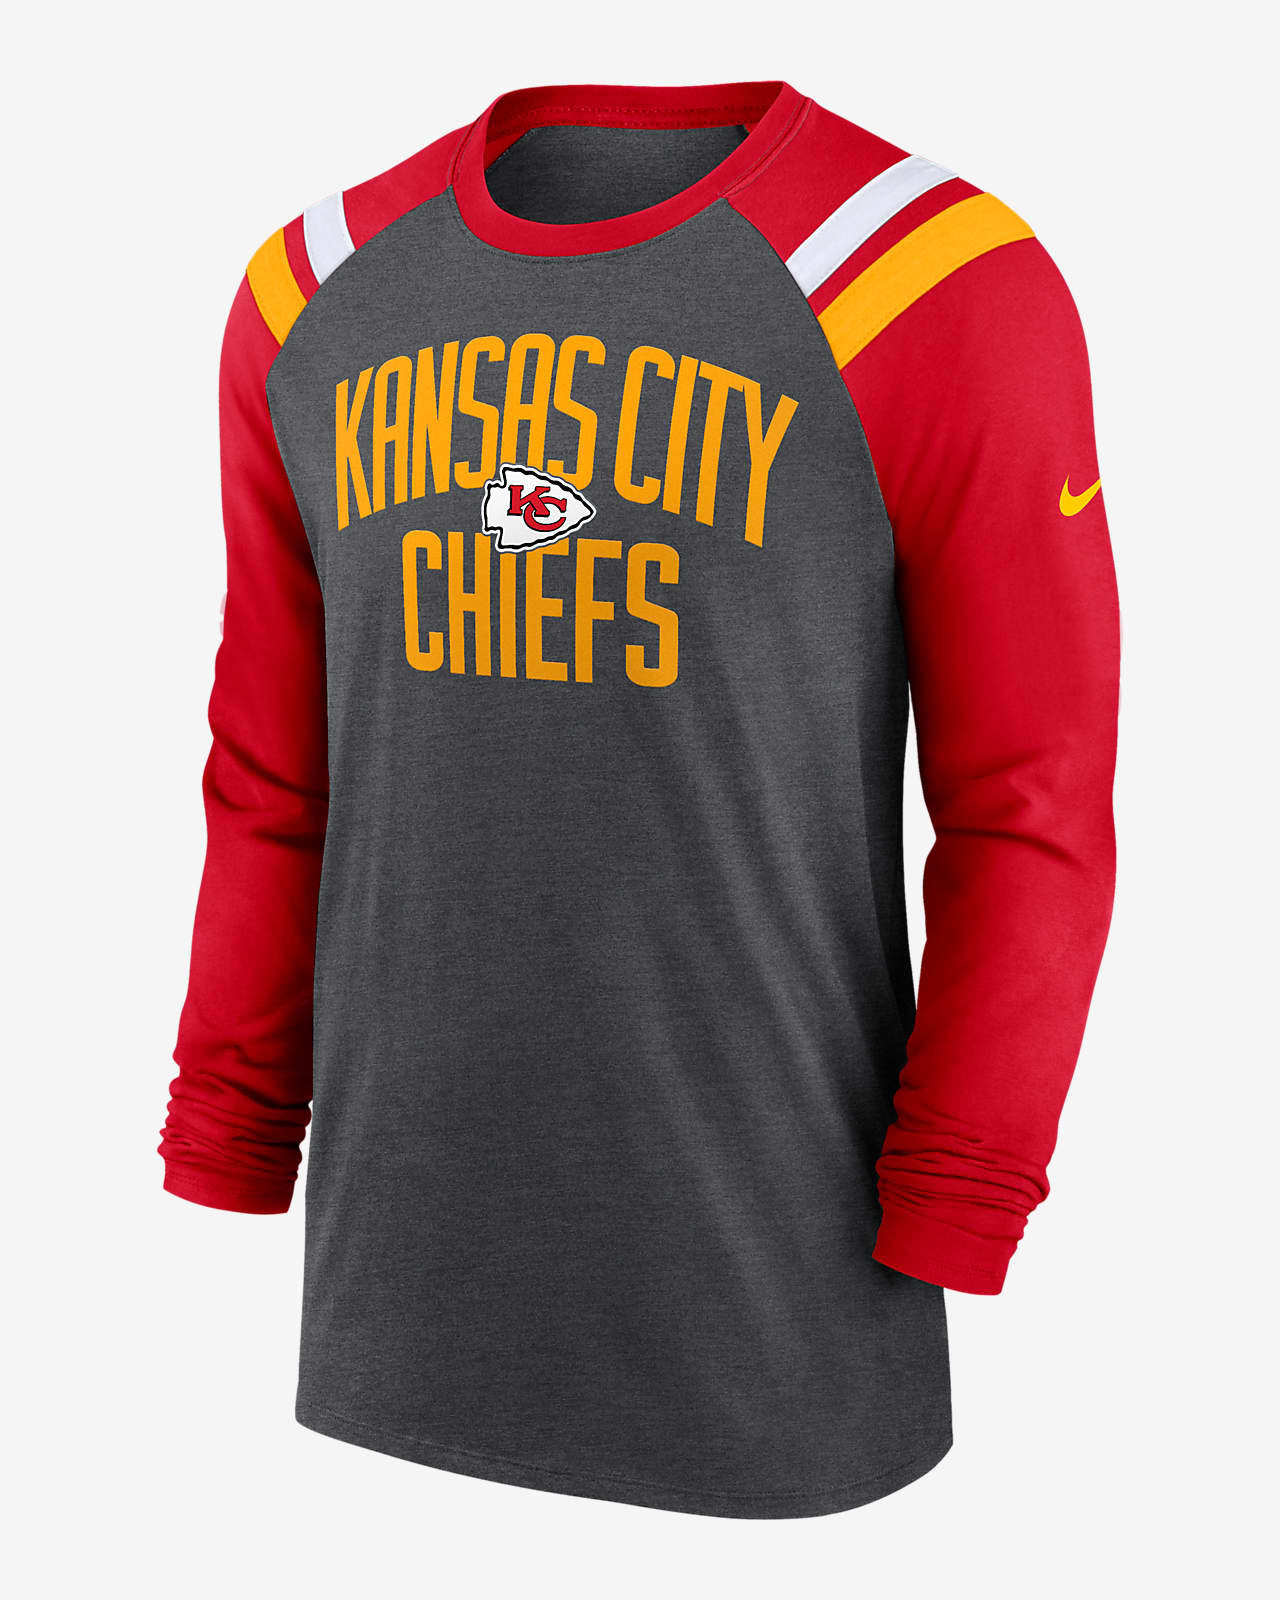 kansas city chiefs t shirts amazon